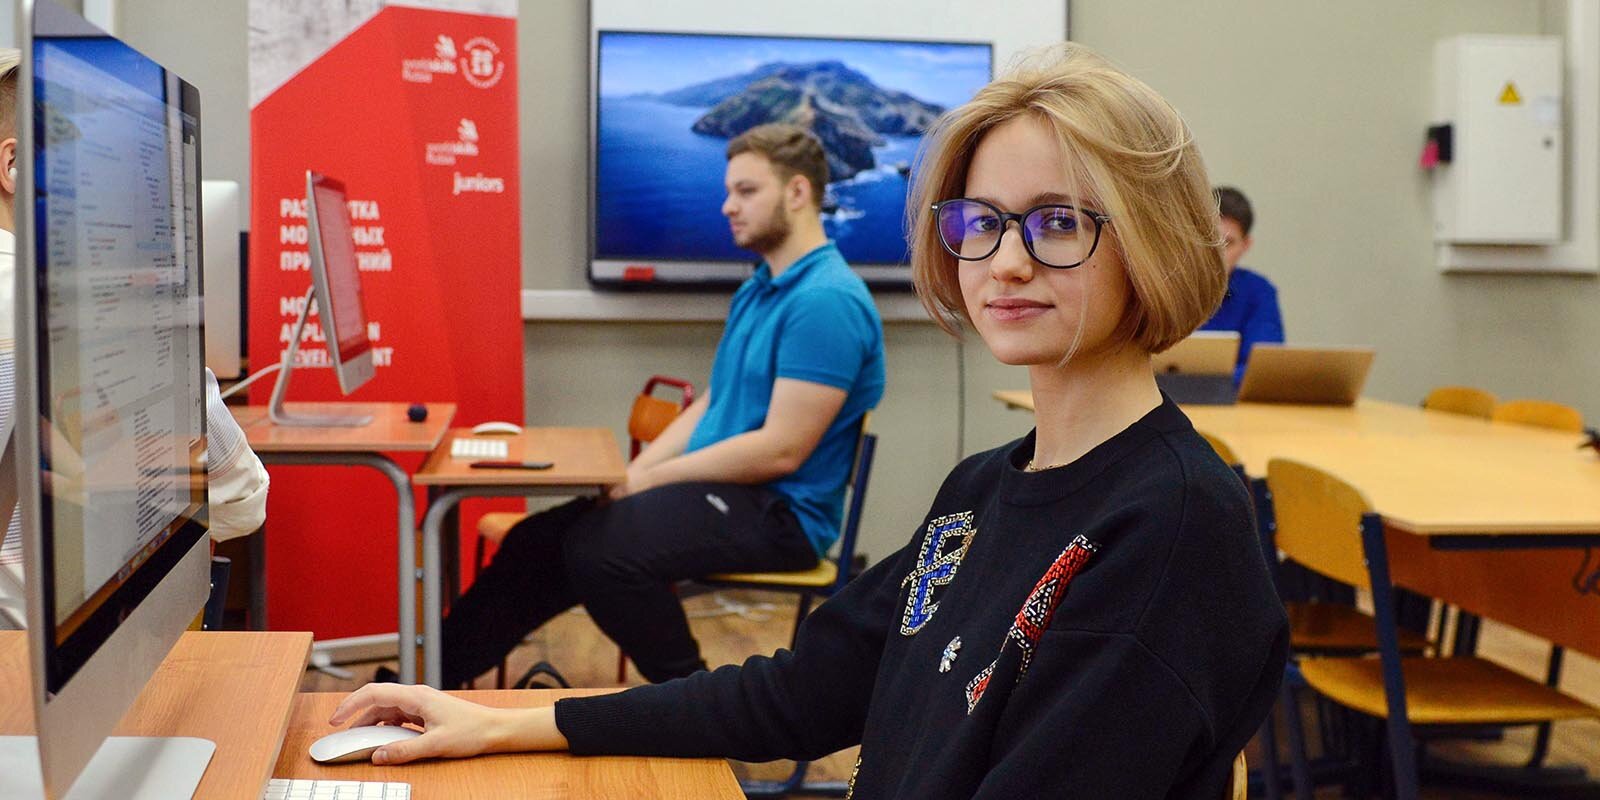 В московском детском технопарке открылся молодежный IT-коворкинг